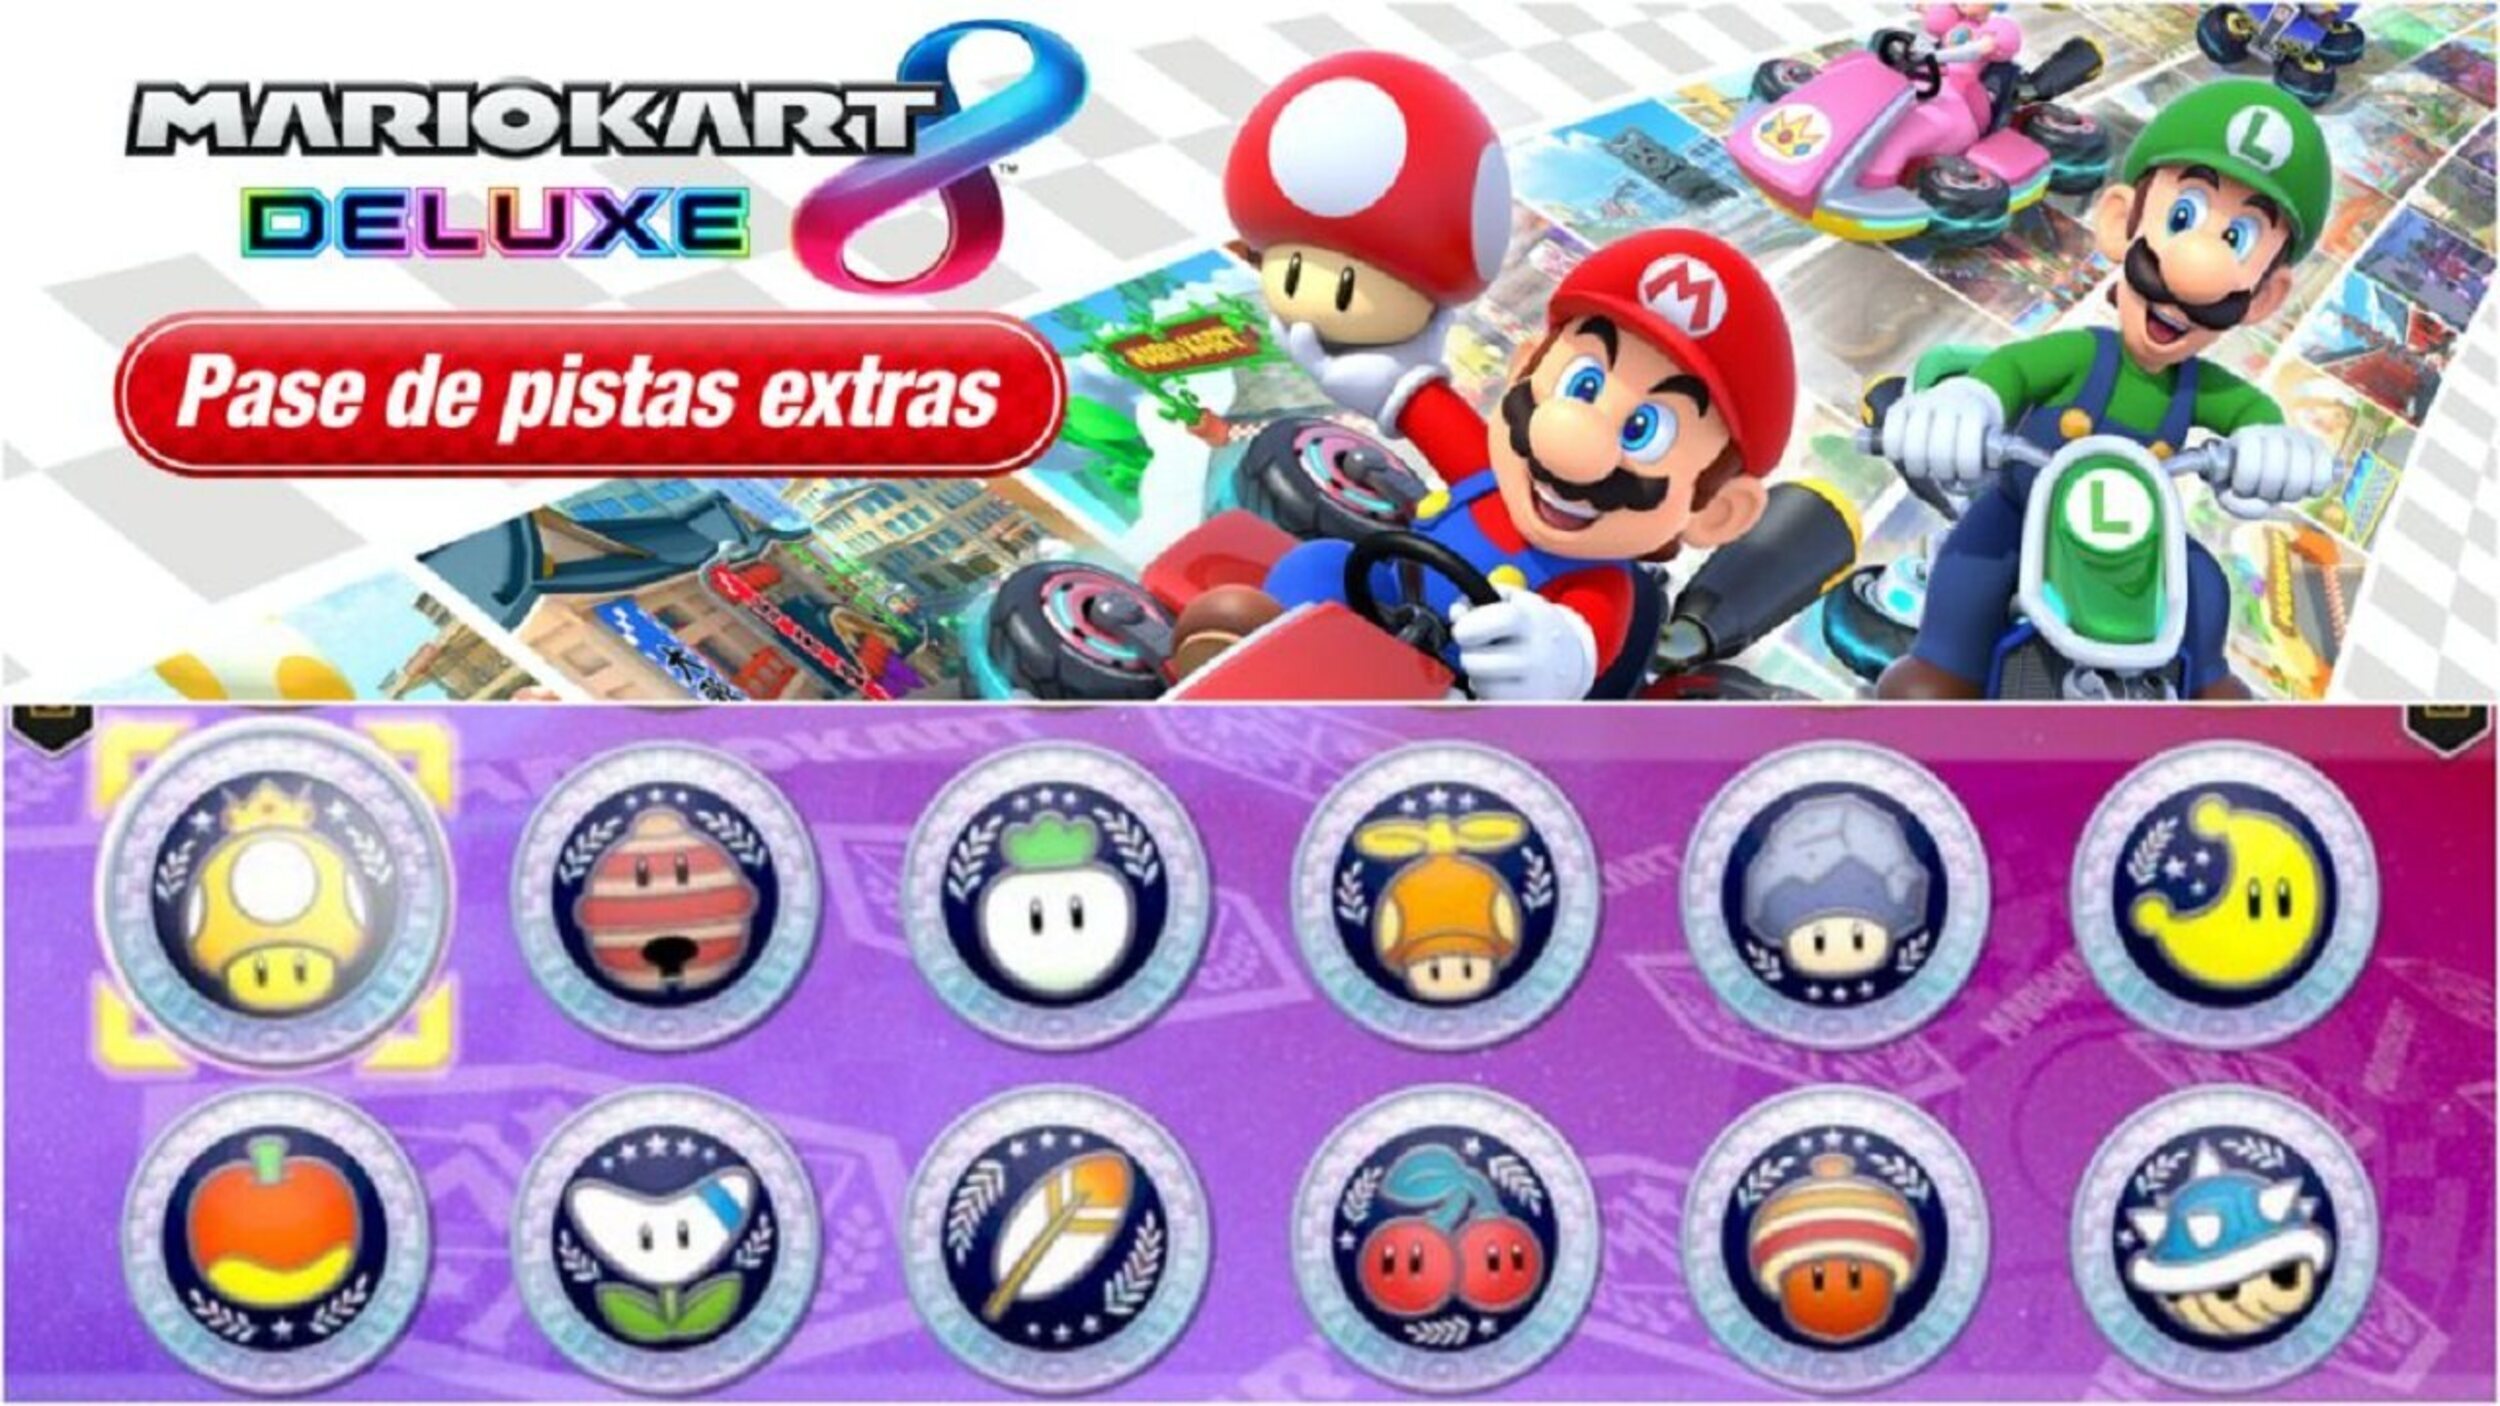 'Mario Kart 8 Deluxe' recibirá pronto una nueva oleada de circuitos DLC.